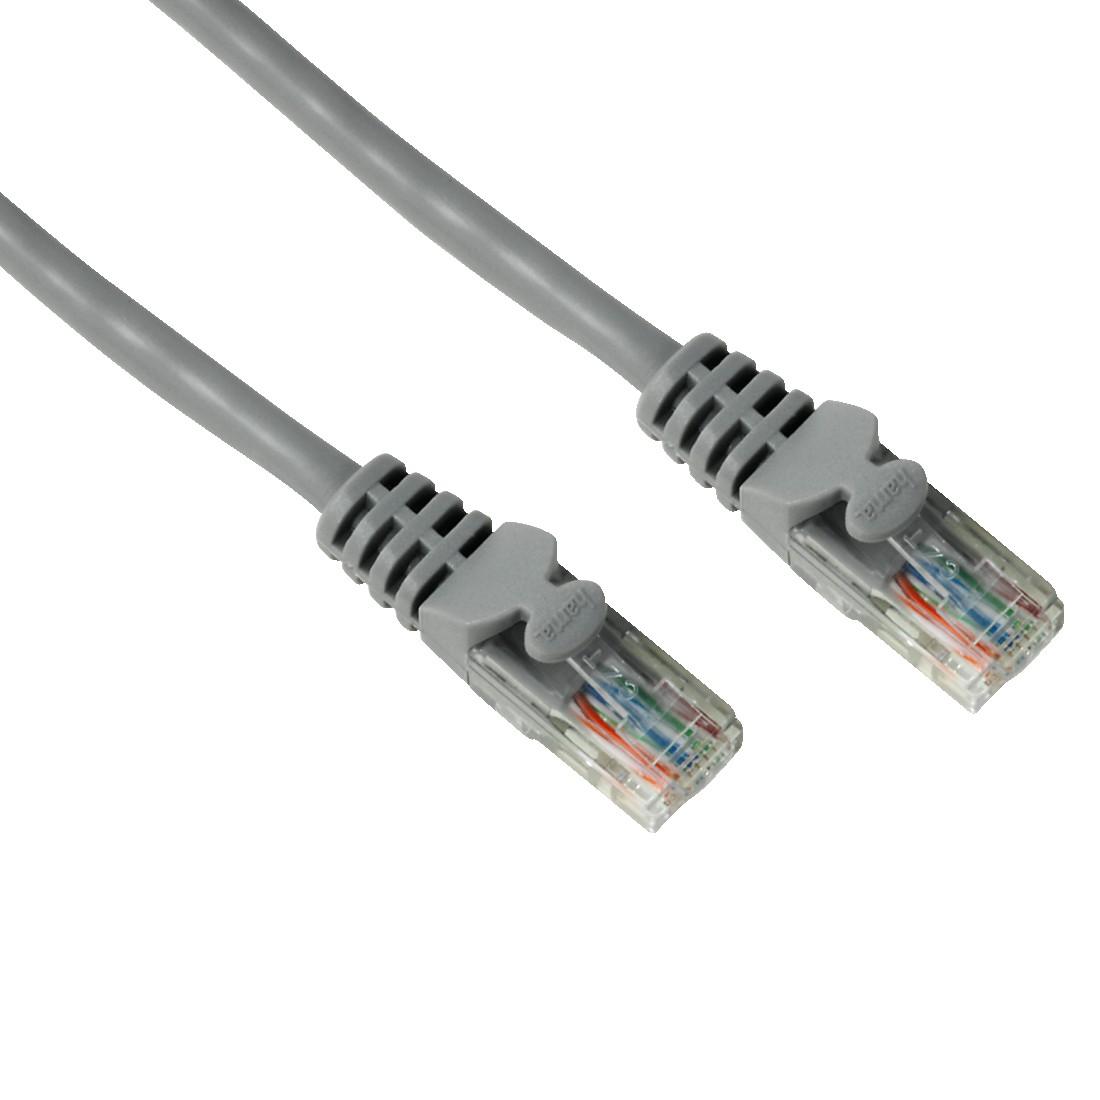 Мрежов кабел HAMA, 20146, CAT 5e, UTP, RJ-45 - RJ-45, 1.5 m, Standard , Сив, булк опаковка